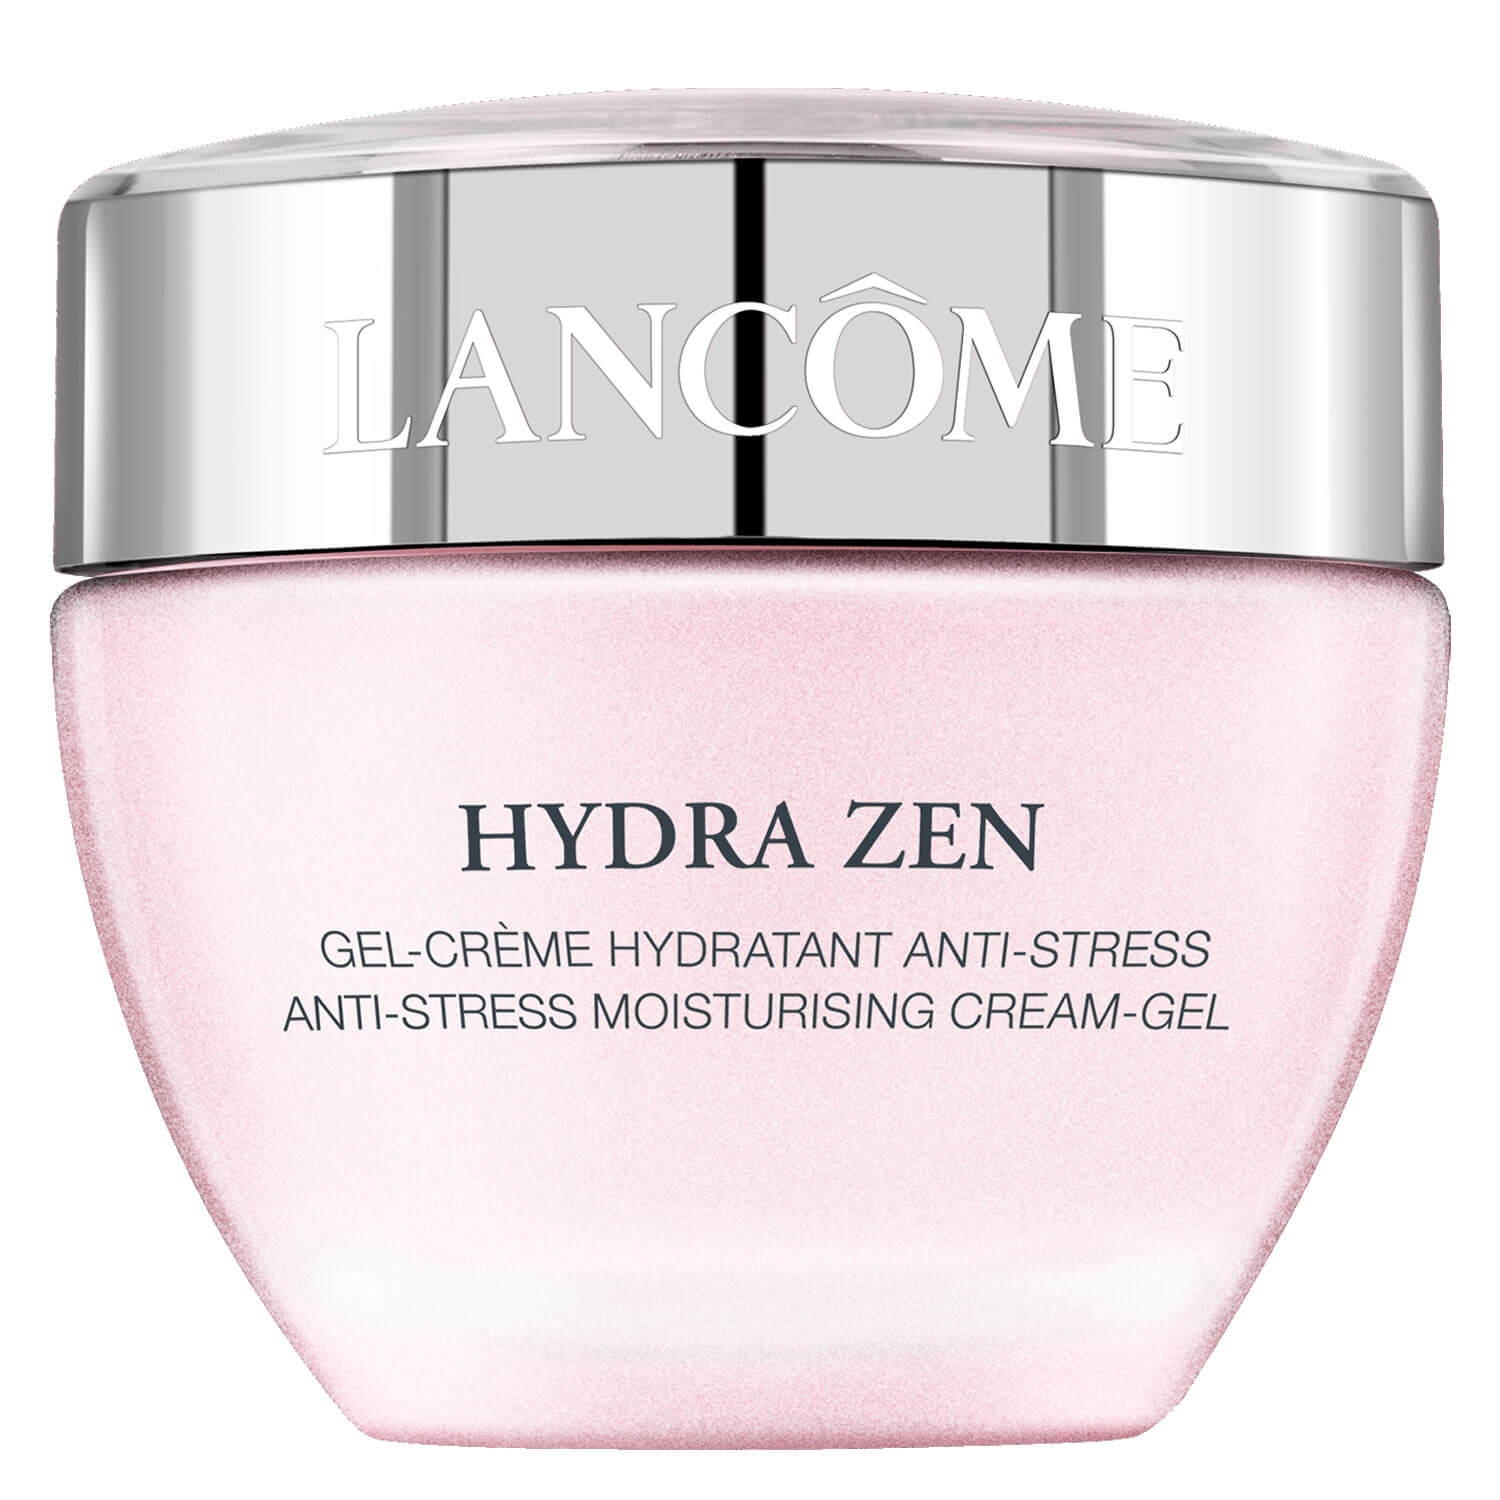 Produktbild von Hydra Zen - Gel-Crème